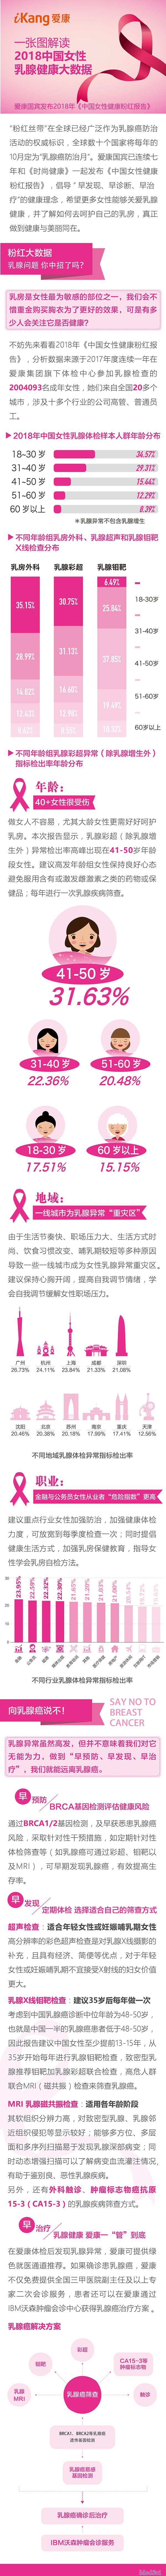 一图<font color="red">解读</font>2018中国女性乳腺健康大<font color="red">数据</font>